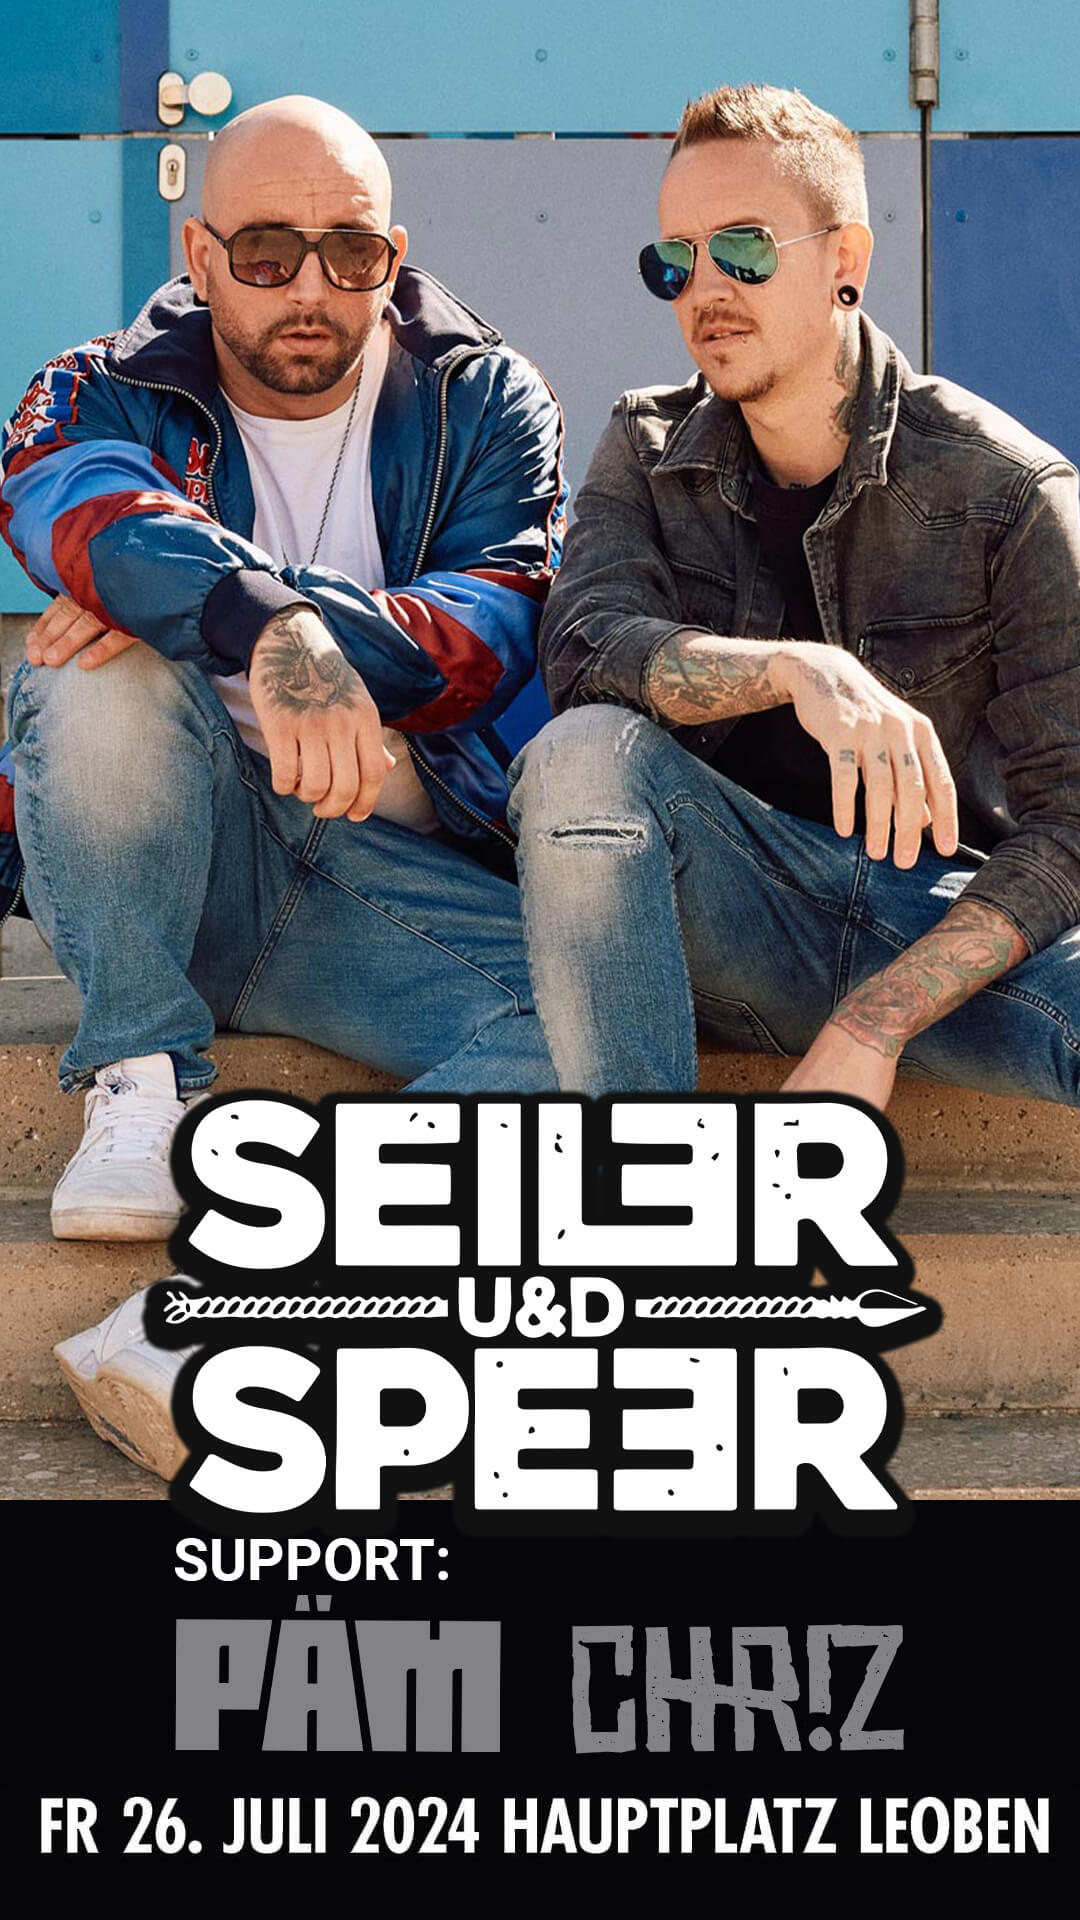 Seiler und Speer Support PÄM und Chr!z am 26. Juli Hauptplatz Leoben